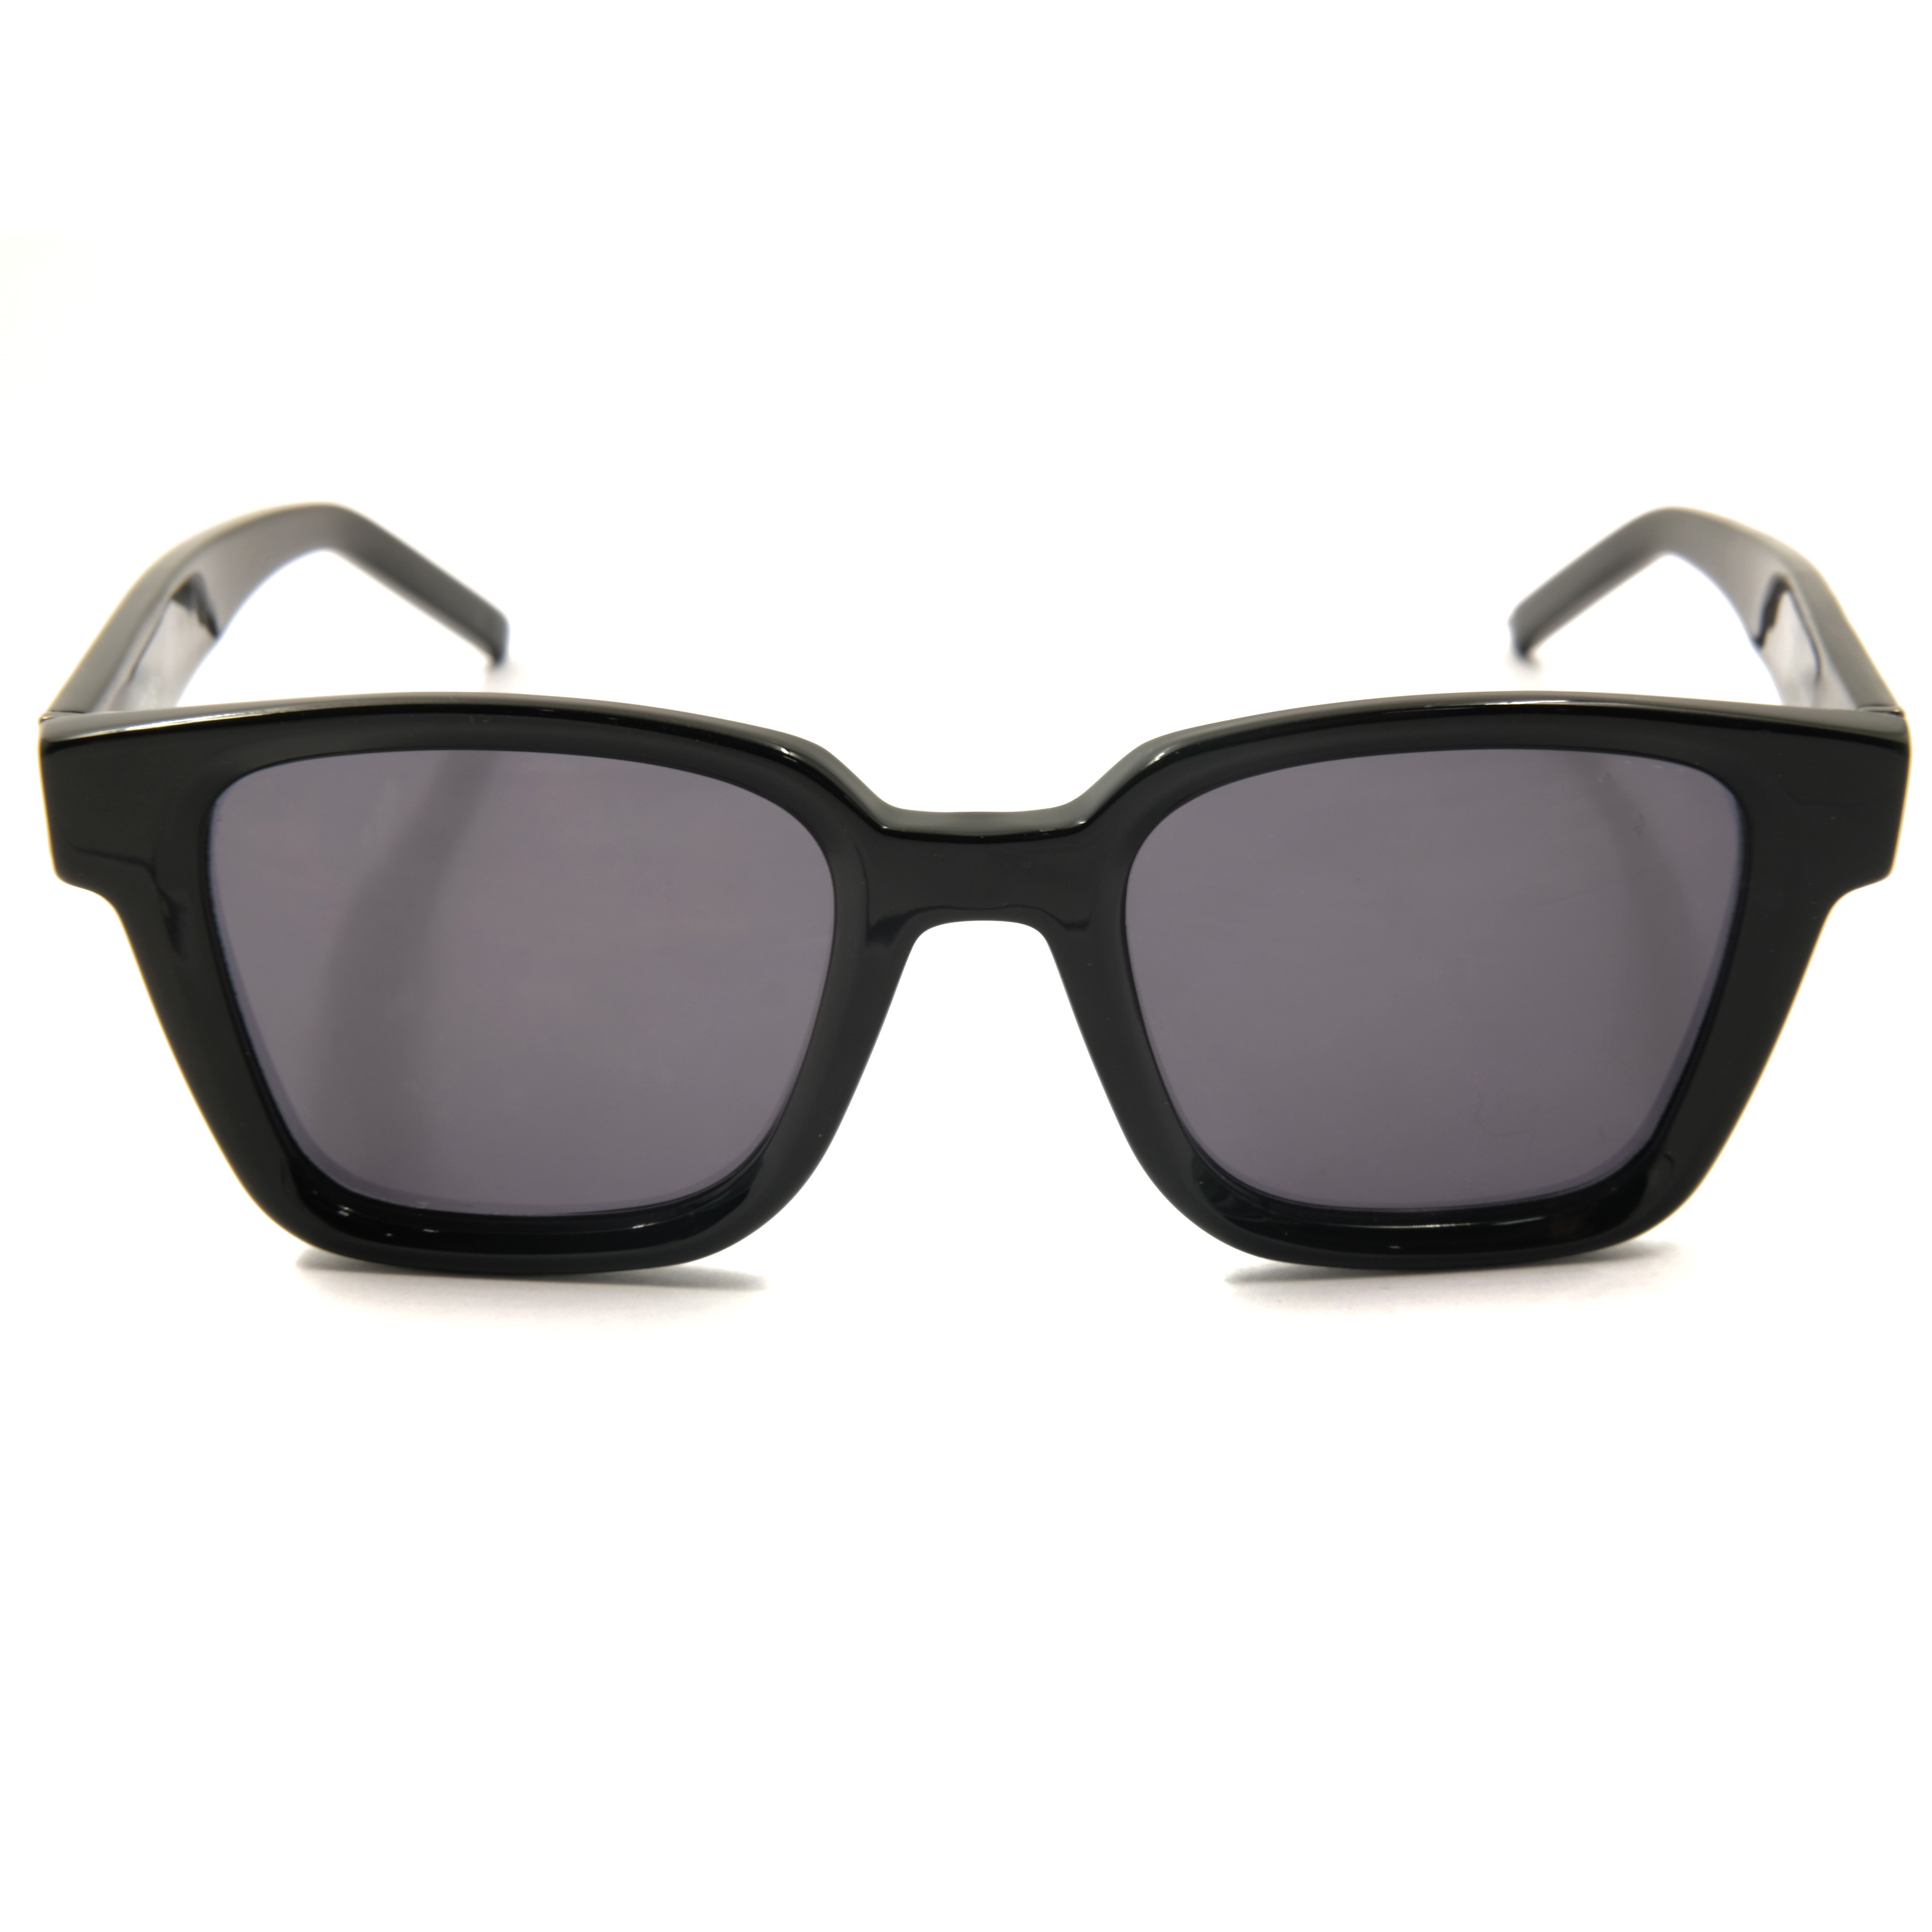 Gafas de sol cuadradas negras personalizadas 2021, gafas de sol de río, gafas de sol para hombre, moda de río, lujo clásico